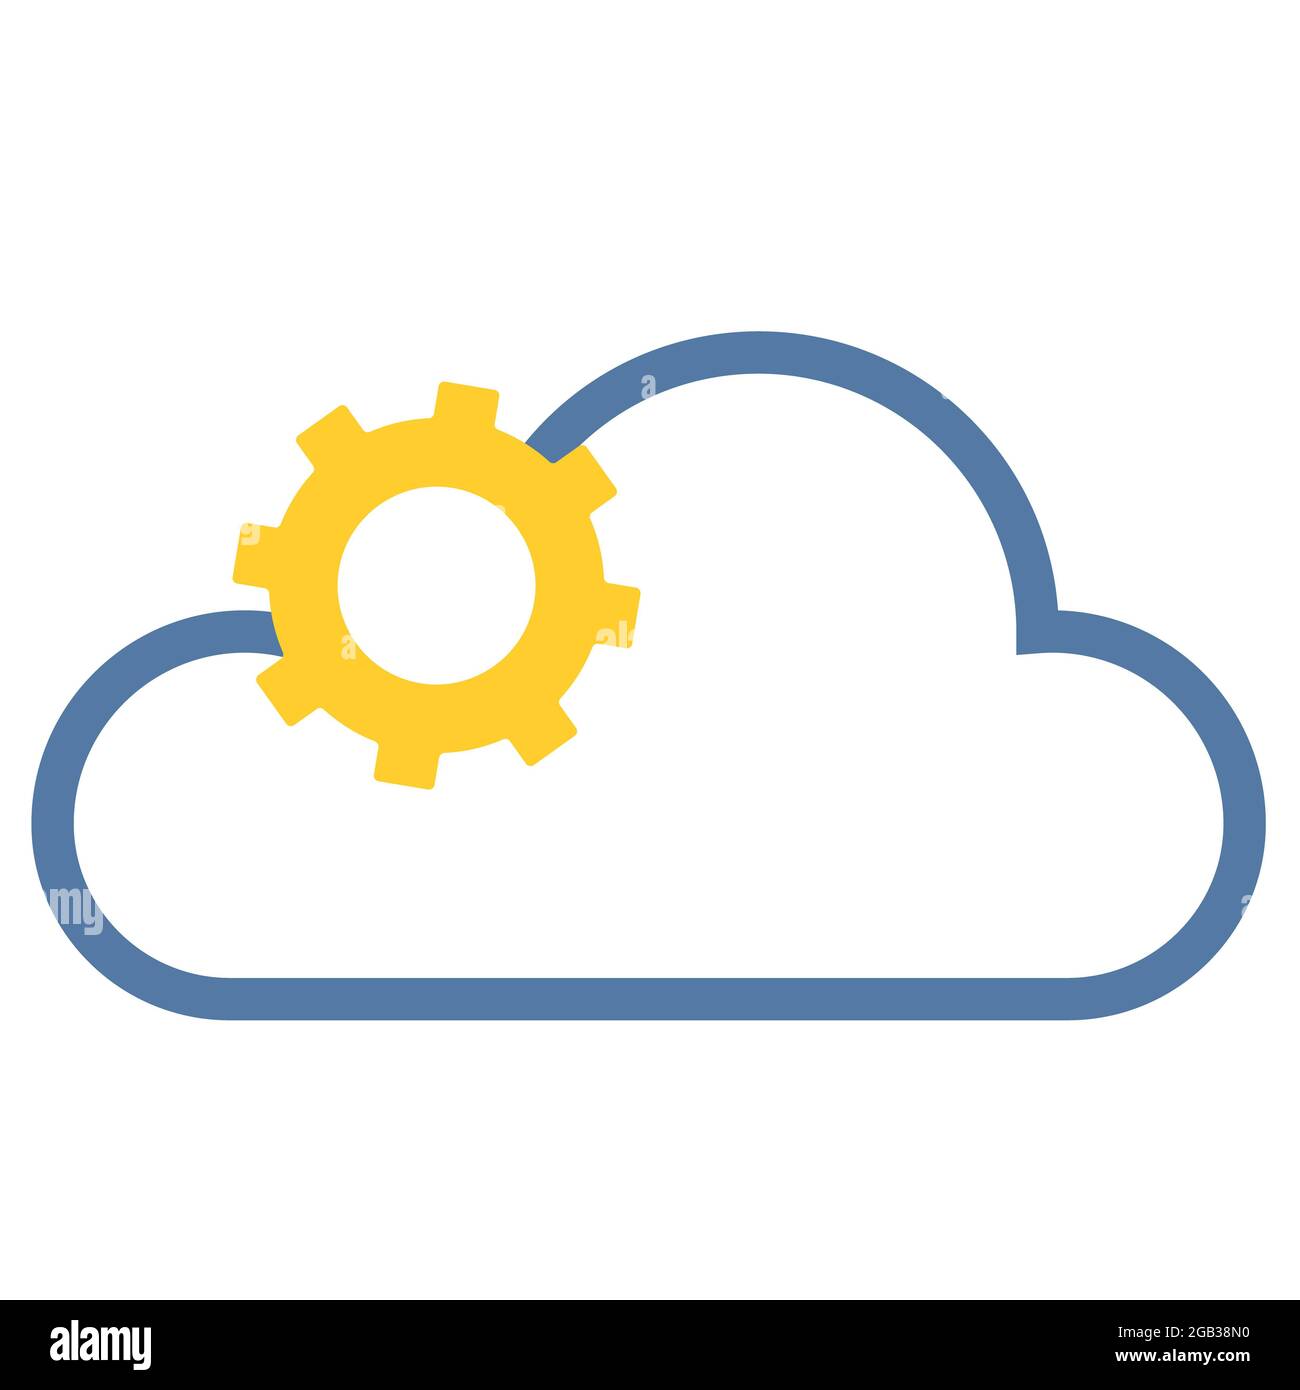 Logo für IT oder jedes andere Unternehmen: Ein gelbes Zahnrad in Form einer Sonne auf blauem Wolkenhintergrund. Raster kreative Illustration Stockfoto